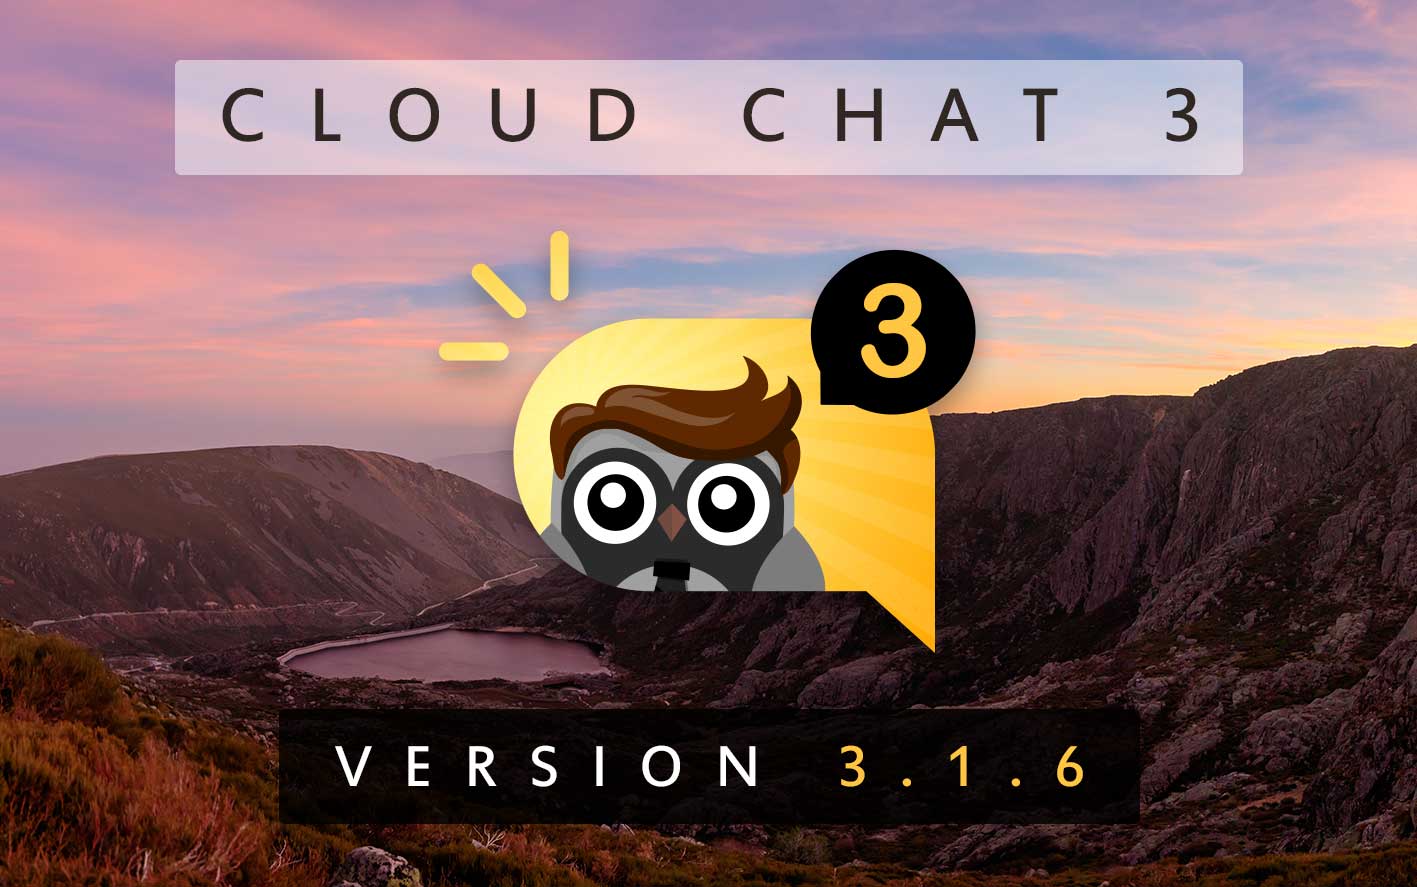 Cloud Chat 3 - Version 3.1.6